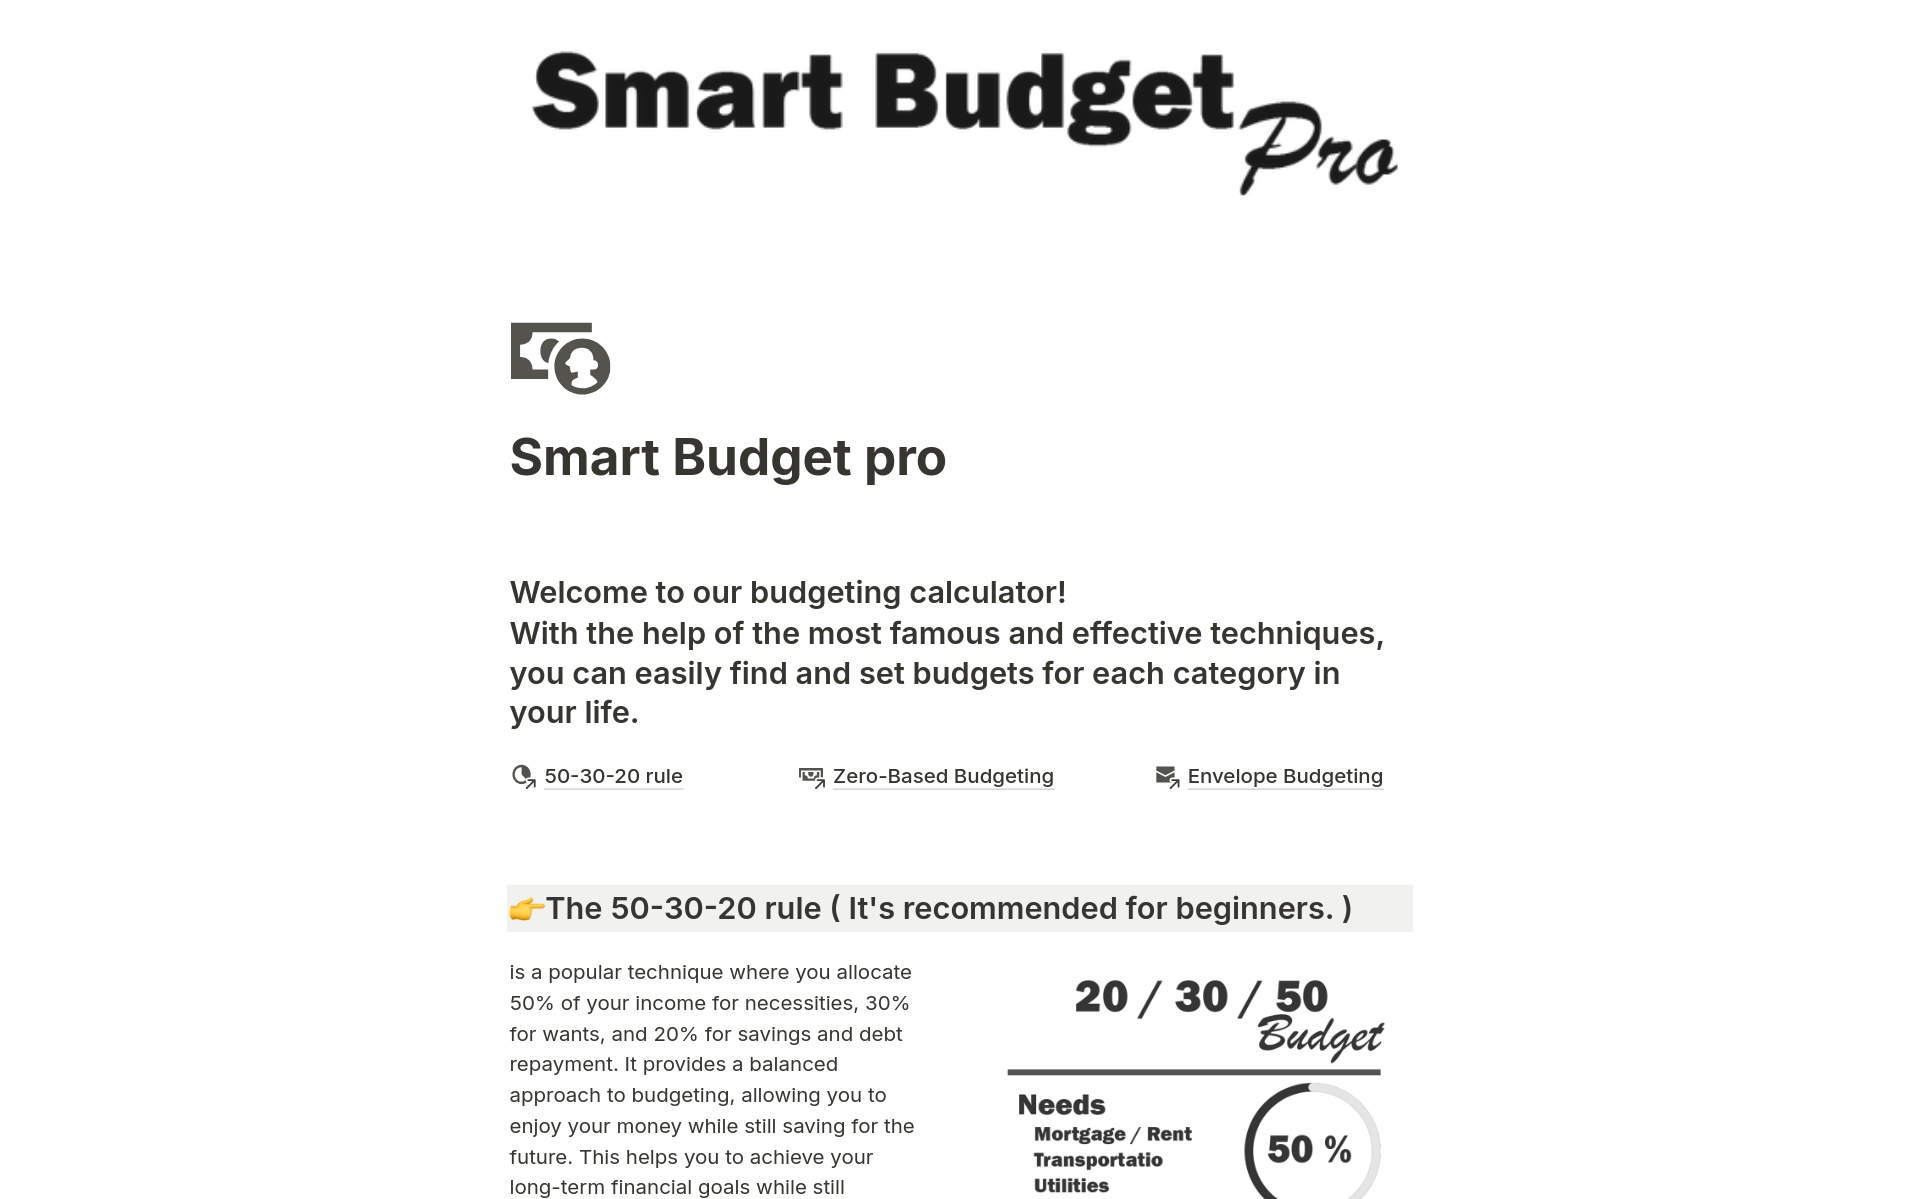 Vista previa de plantilla para Smart Budget pro